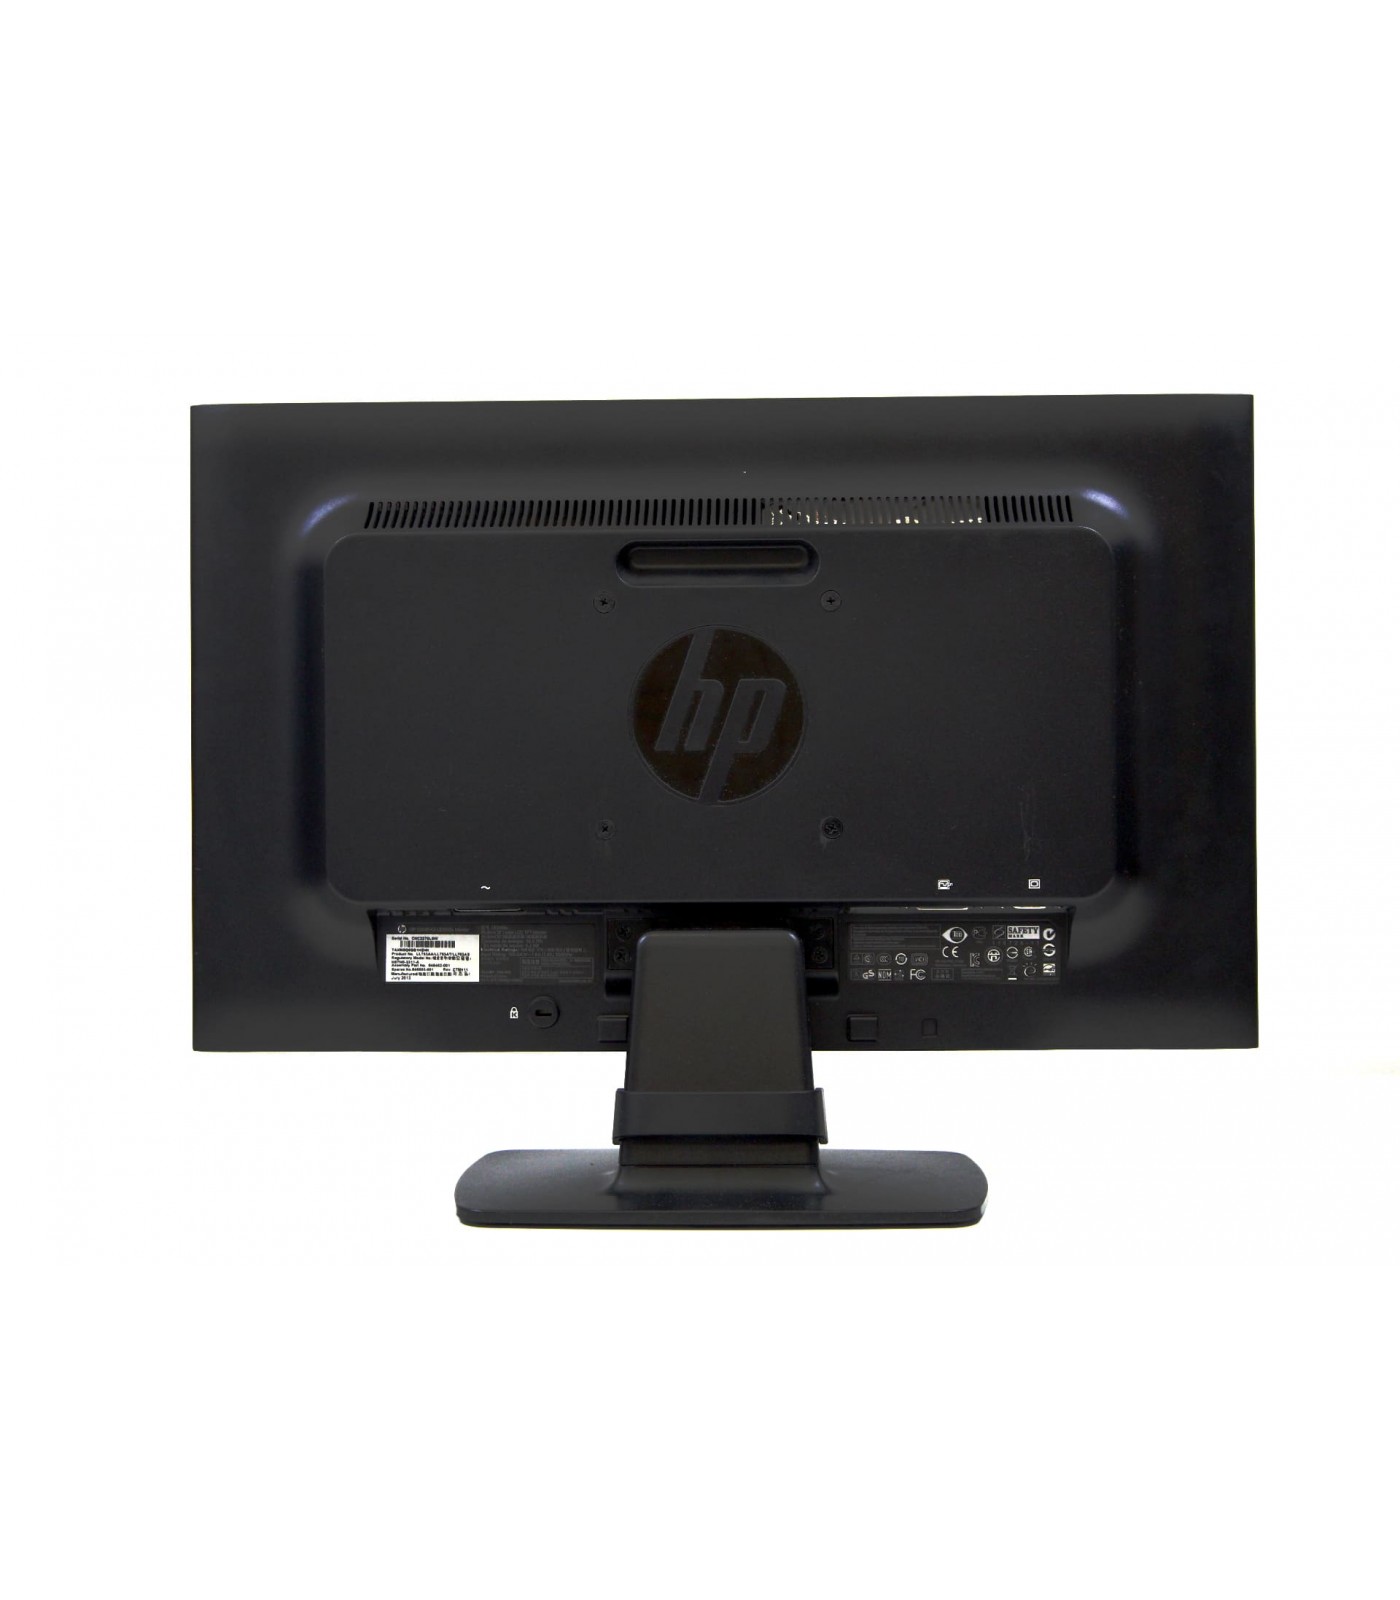 Poleasingowy monitor HP Le2002x o rozdzielczości HD+  przekątnej 20 cali